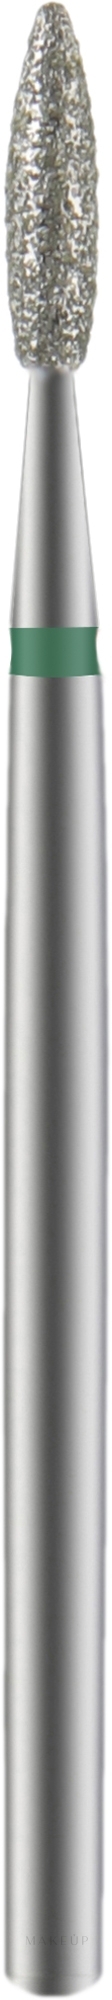 Nagelfräser Flamme grün Durchmesser 2.1 mm Arbeitsteil 8 mm - Staleks Pro — Bild 1 St.